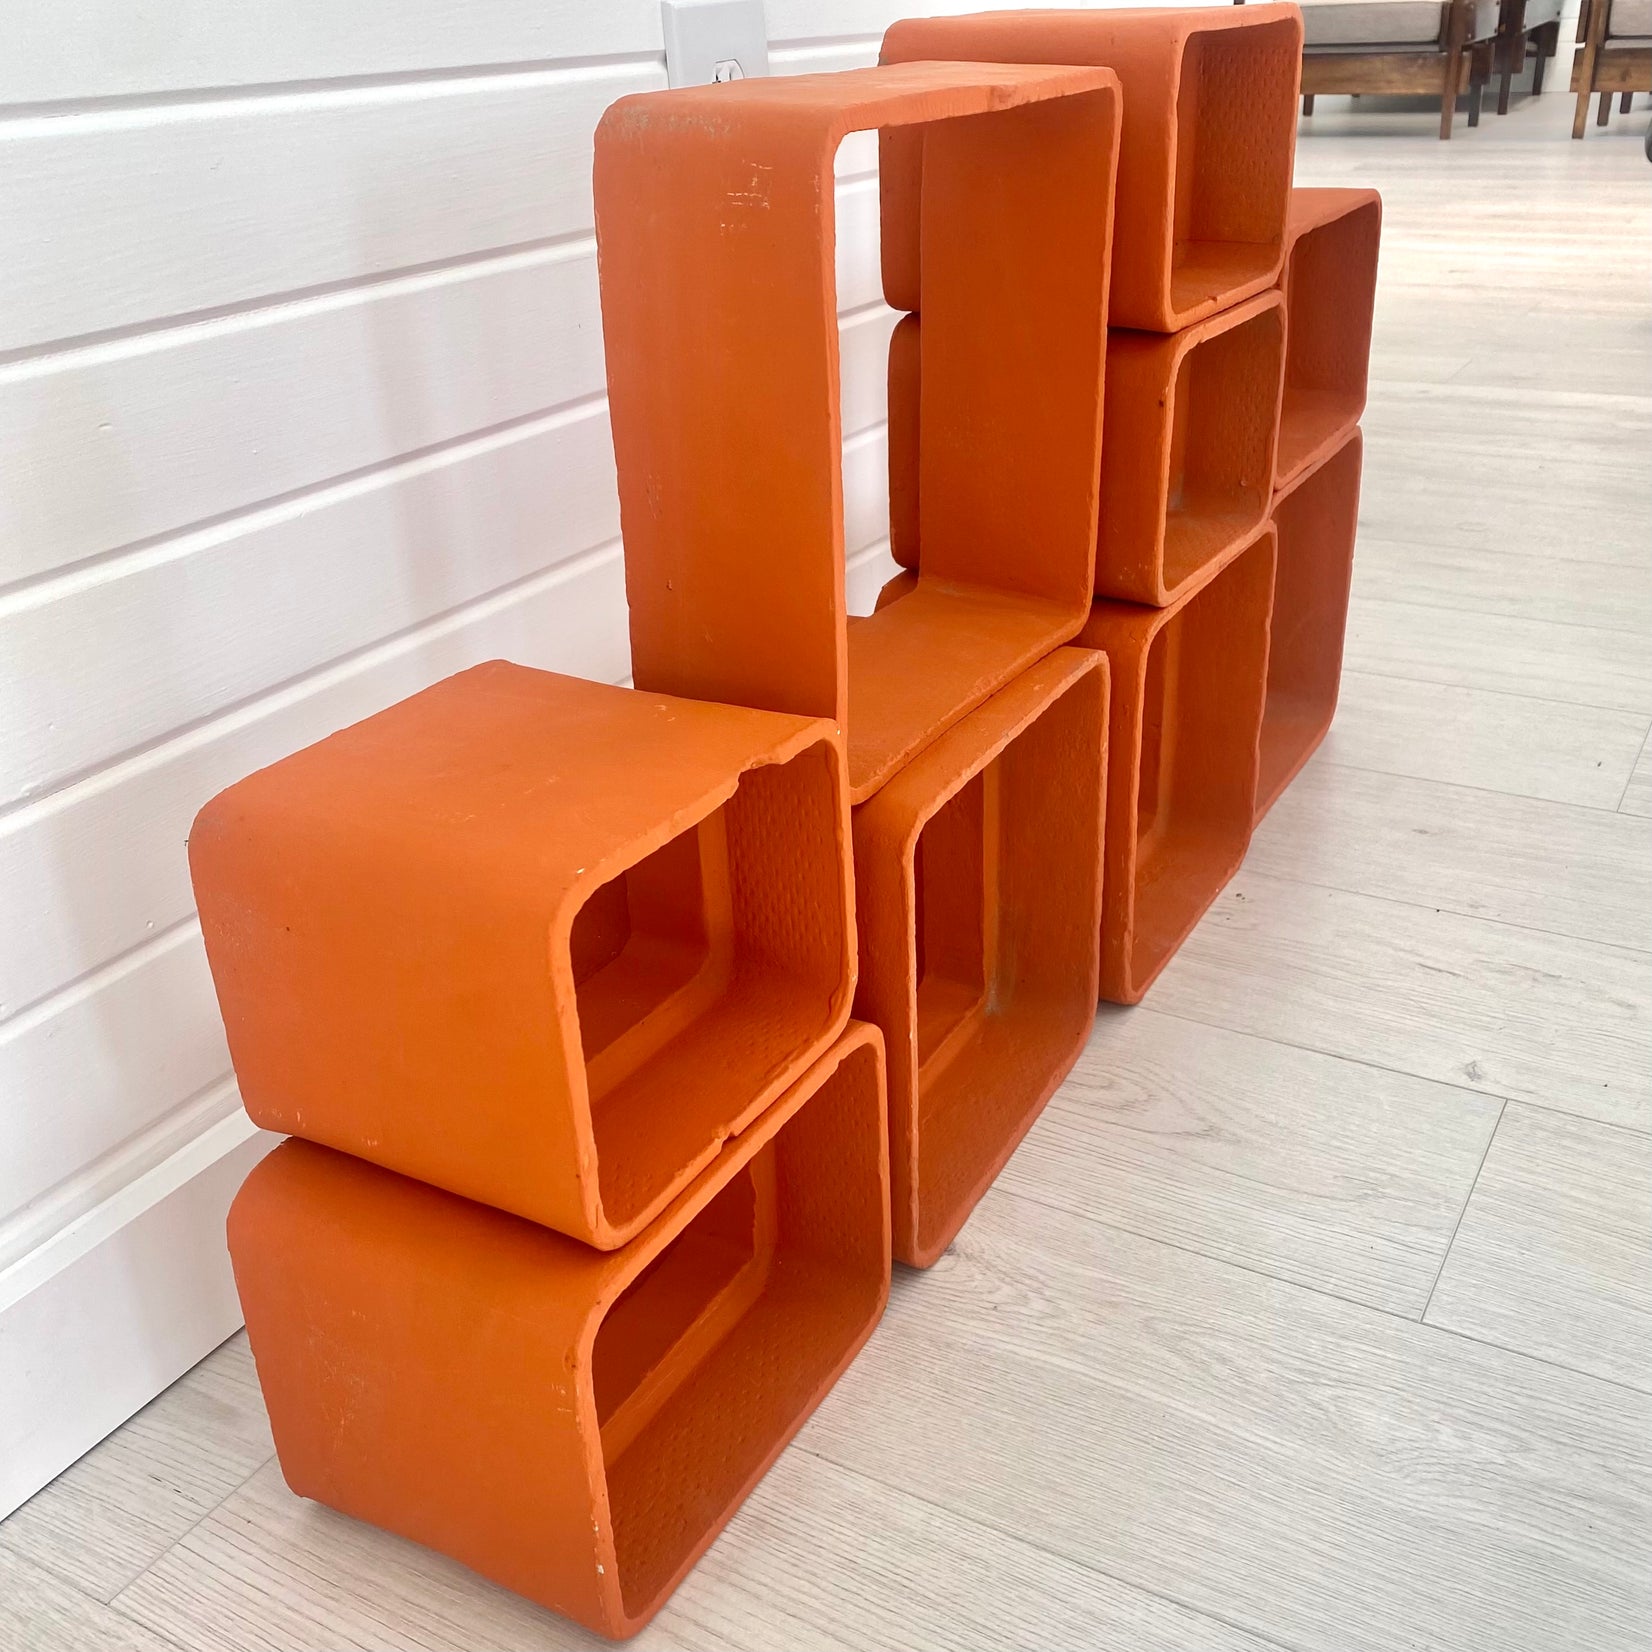 Willy Guhl Orange Concrete Bookcase, 1960s Switzerland